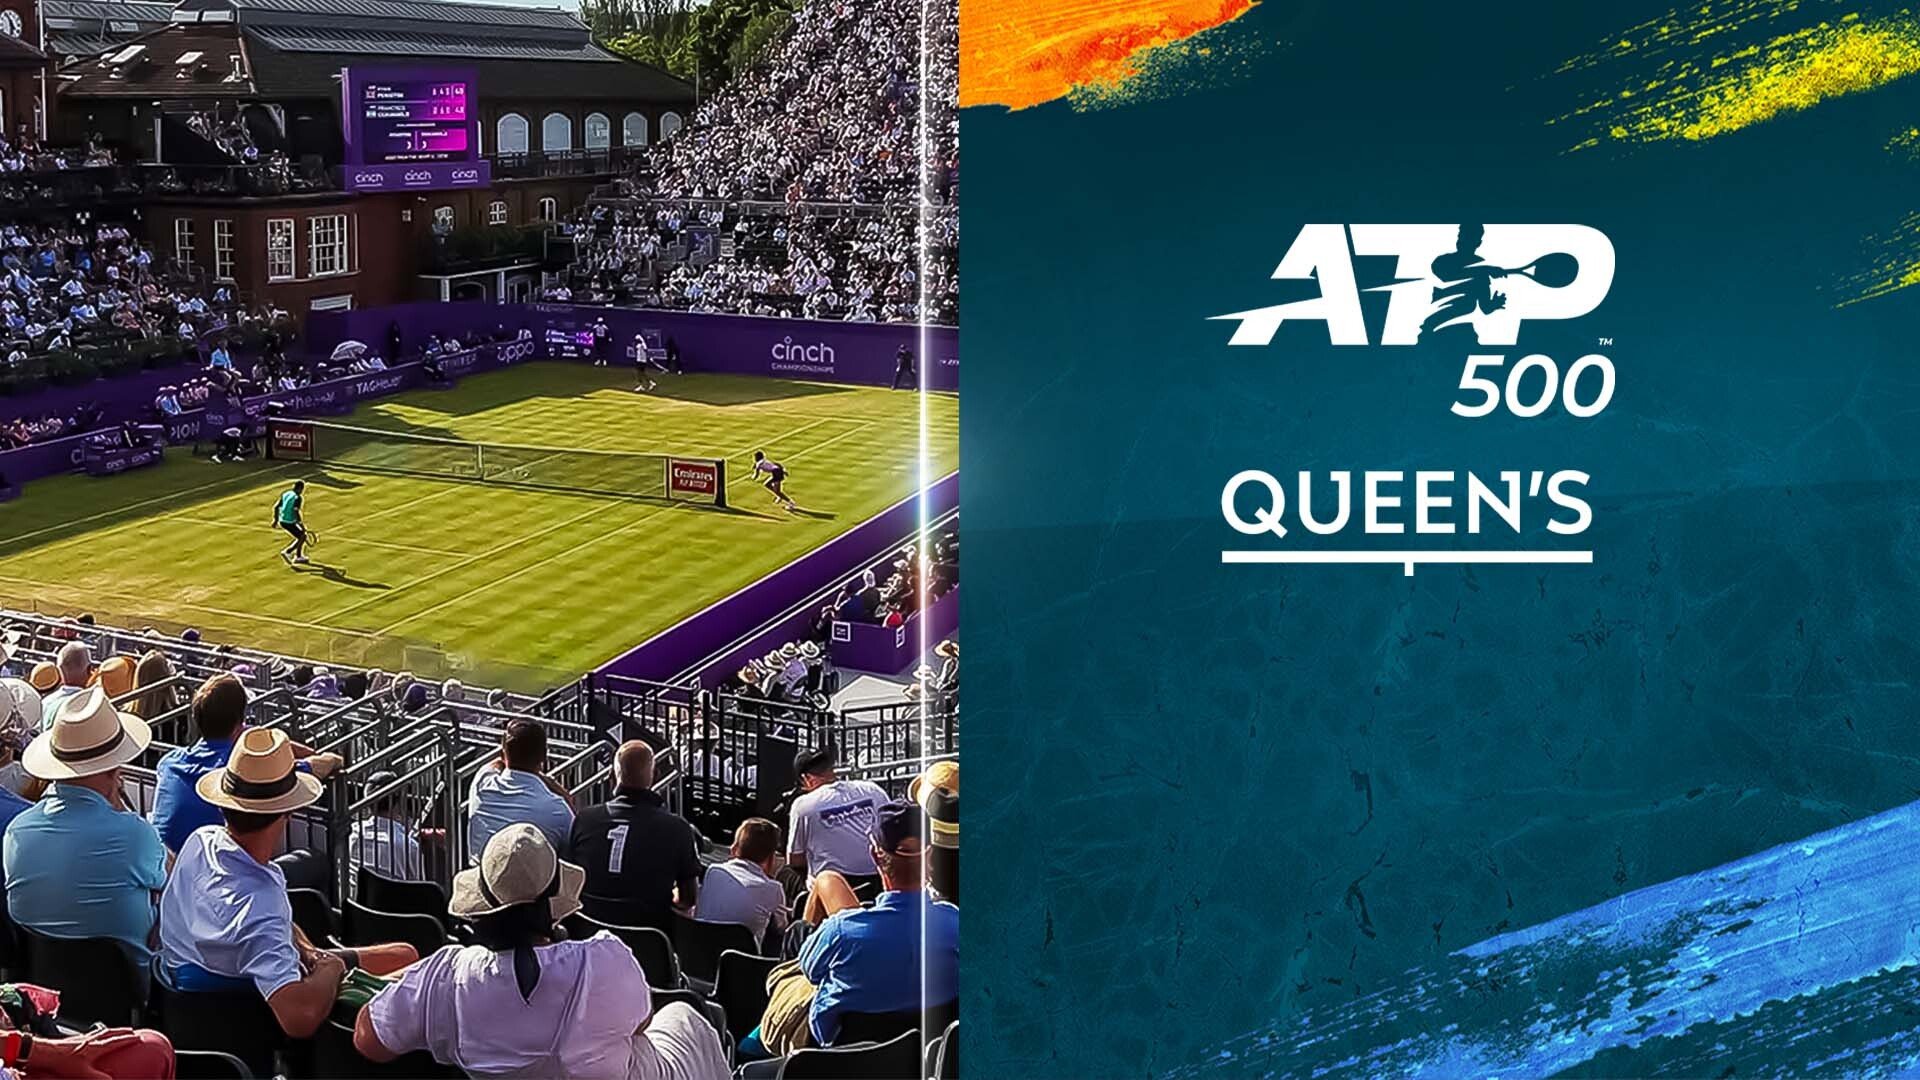 Guarda ATP 500 Queens online